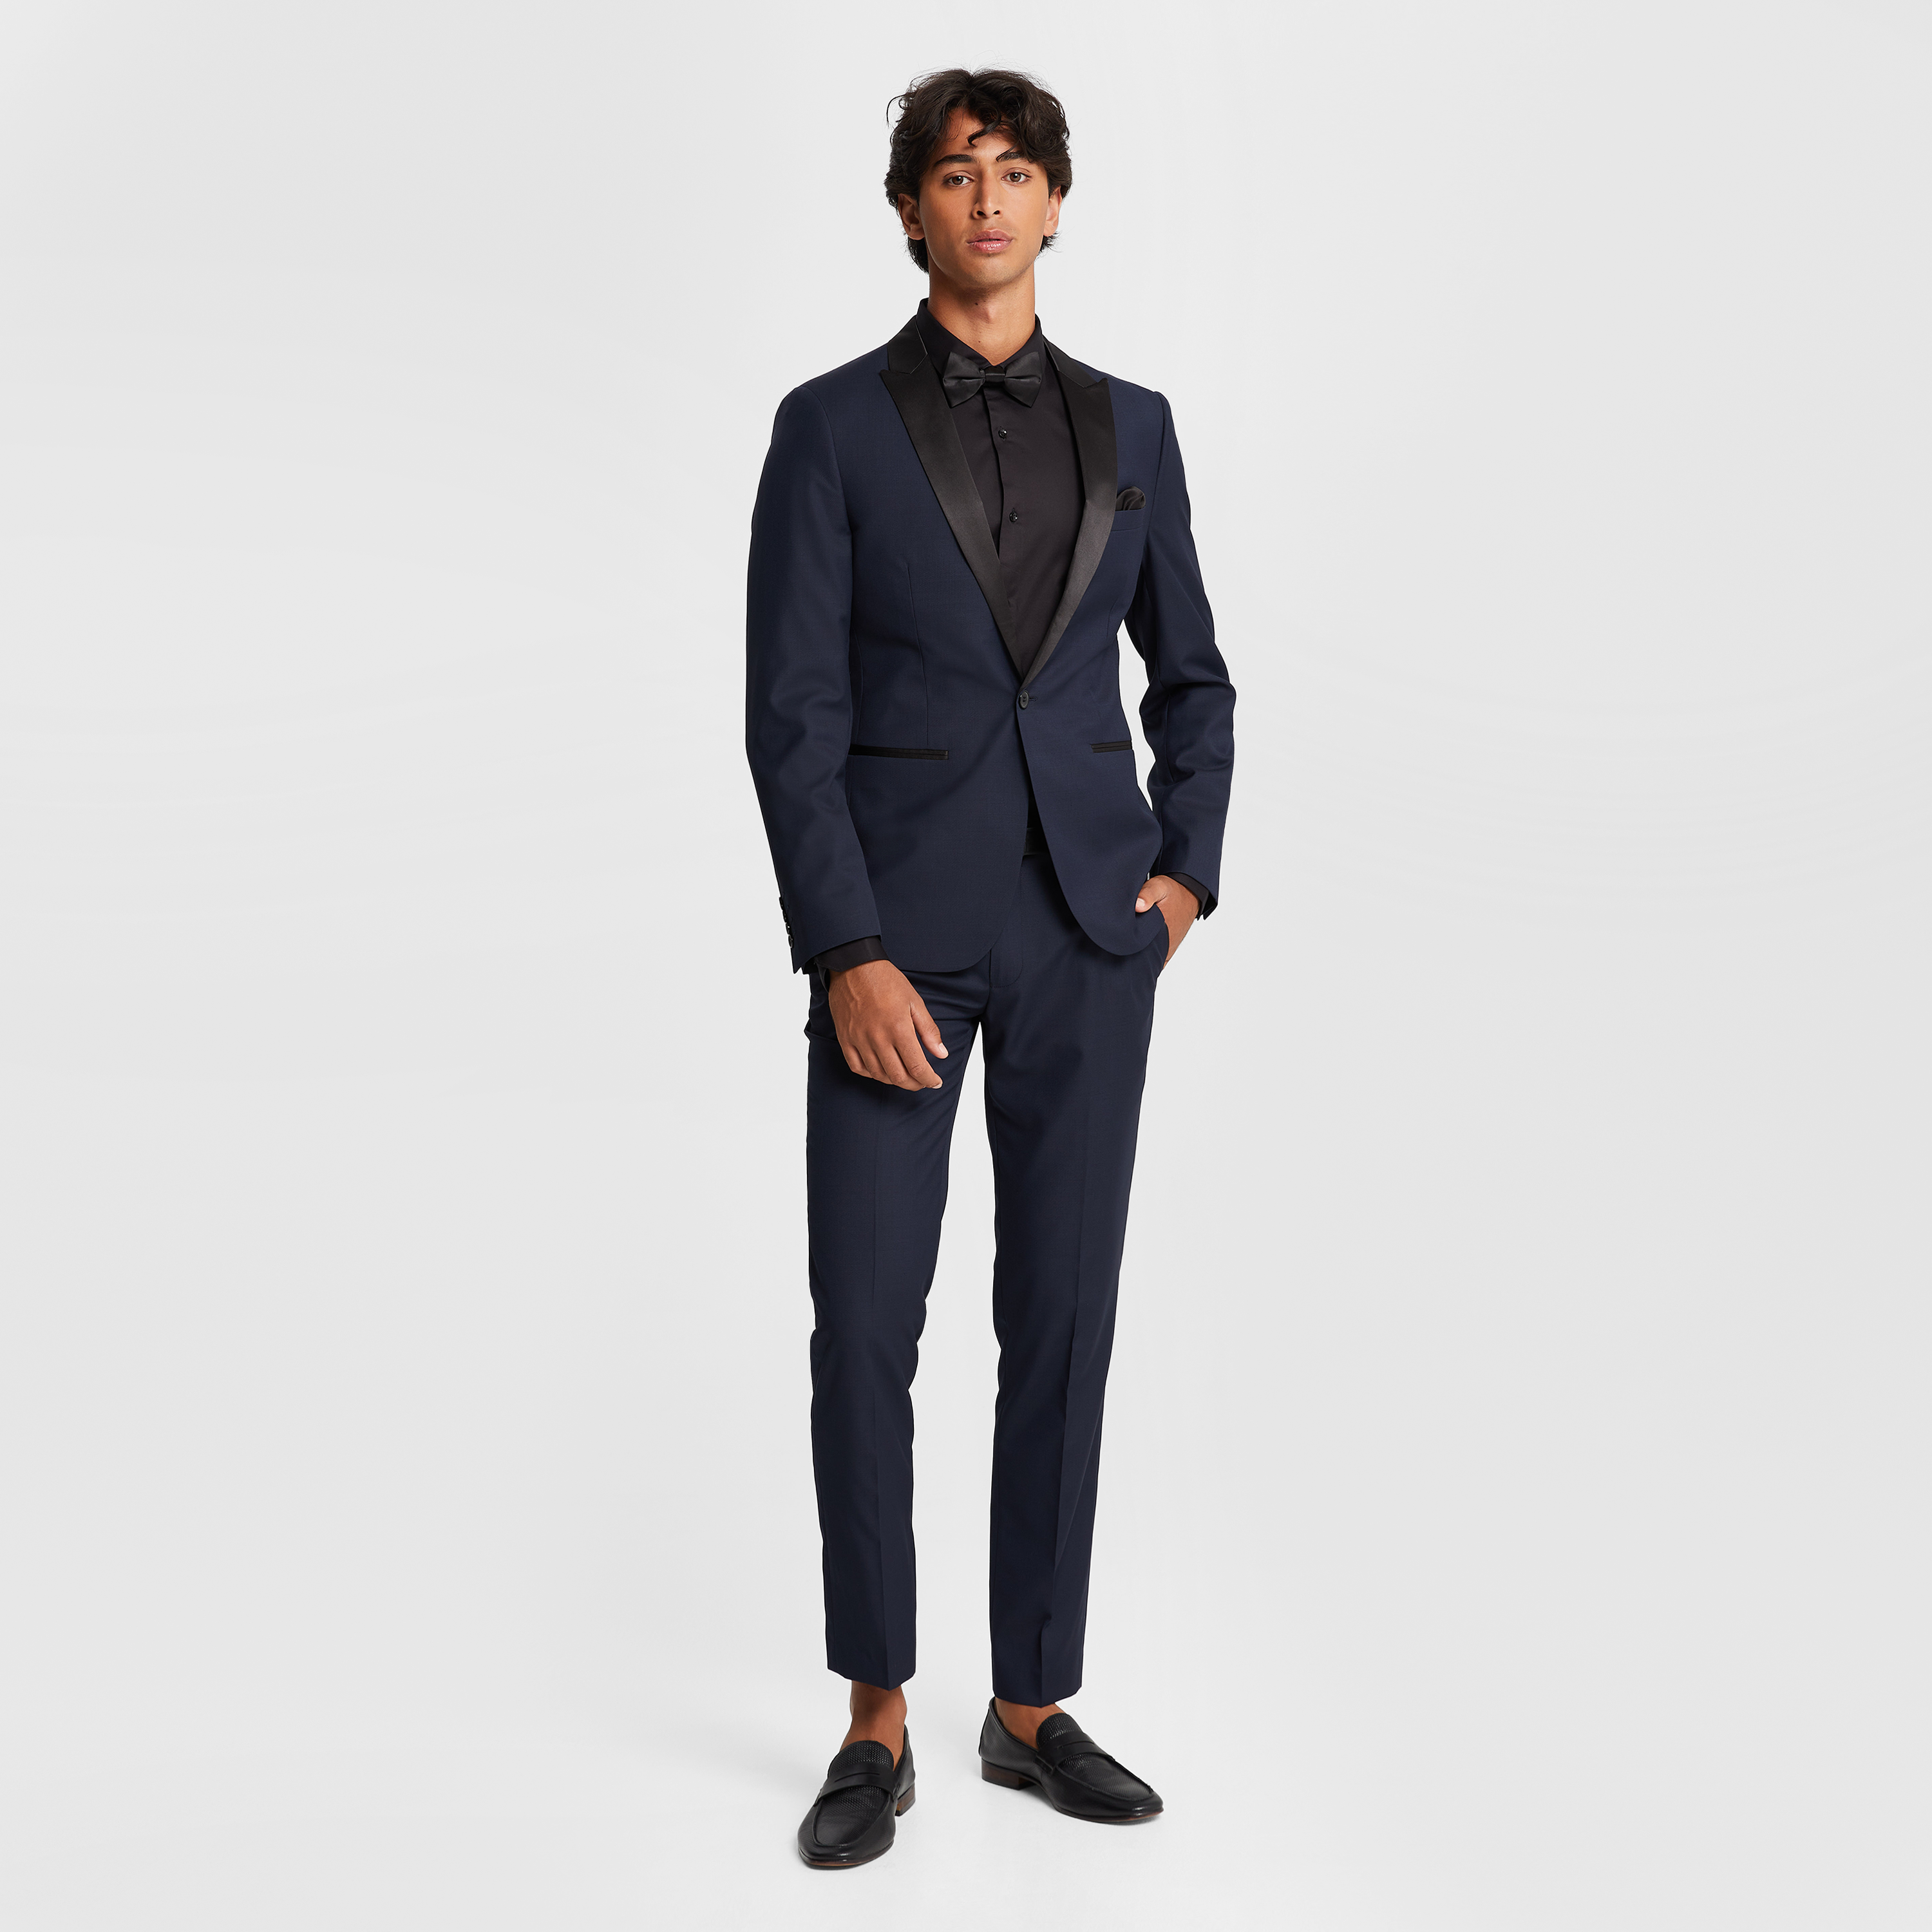 1/6 Scale Male Blue Suit Set & Vest & Black Shirt Model for 12